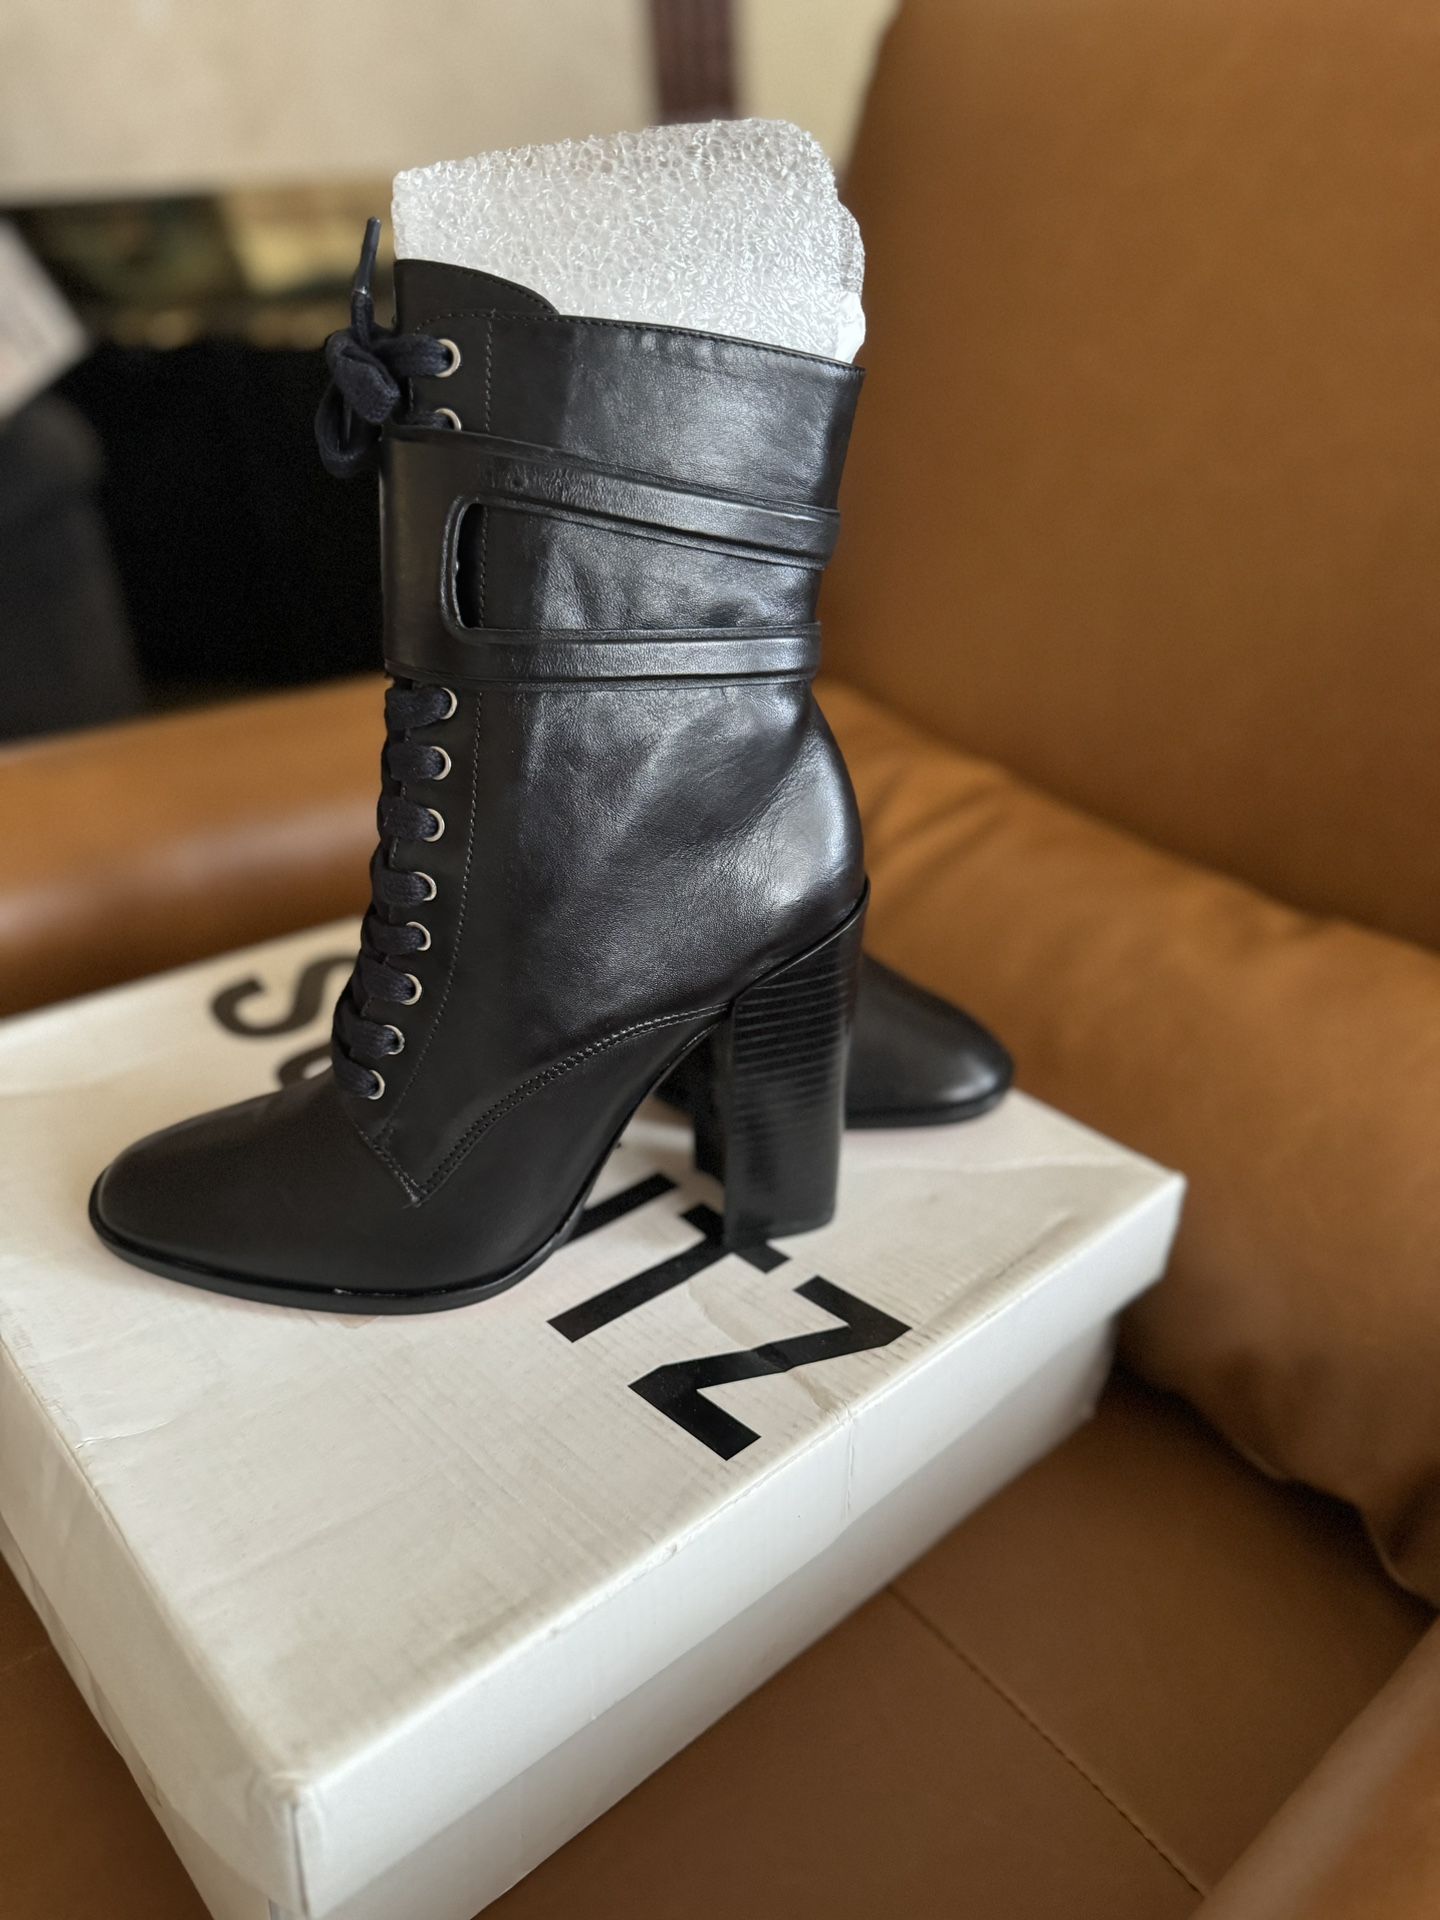 New Schutz Makayla Black Boots Size 7